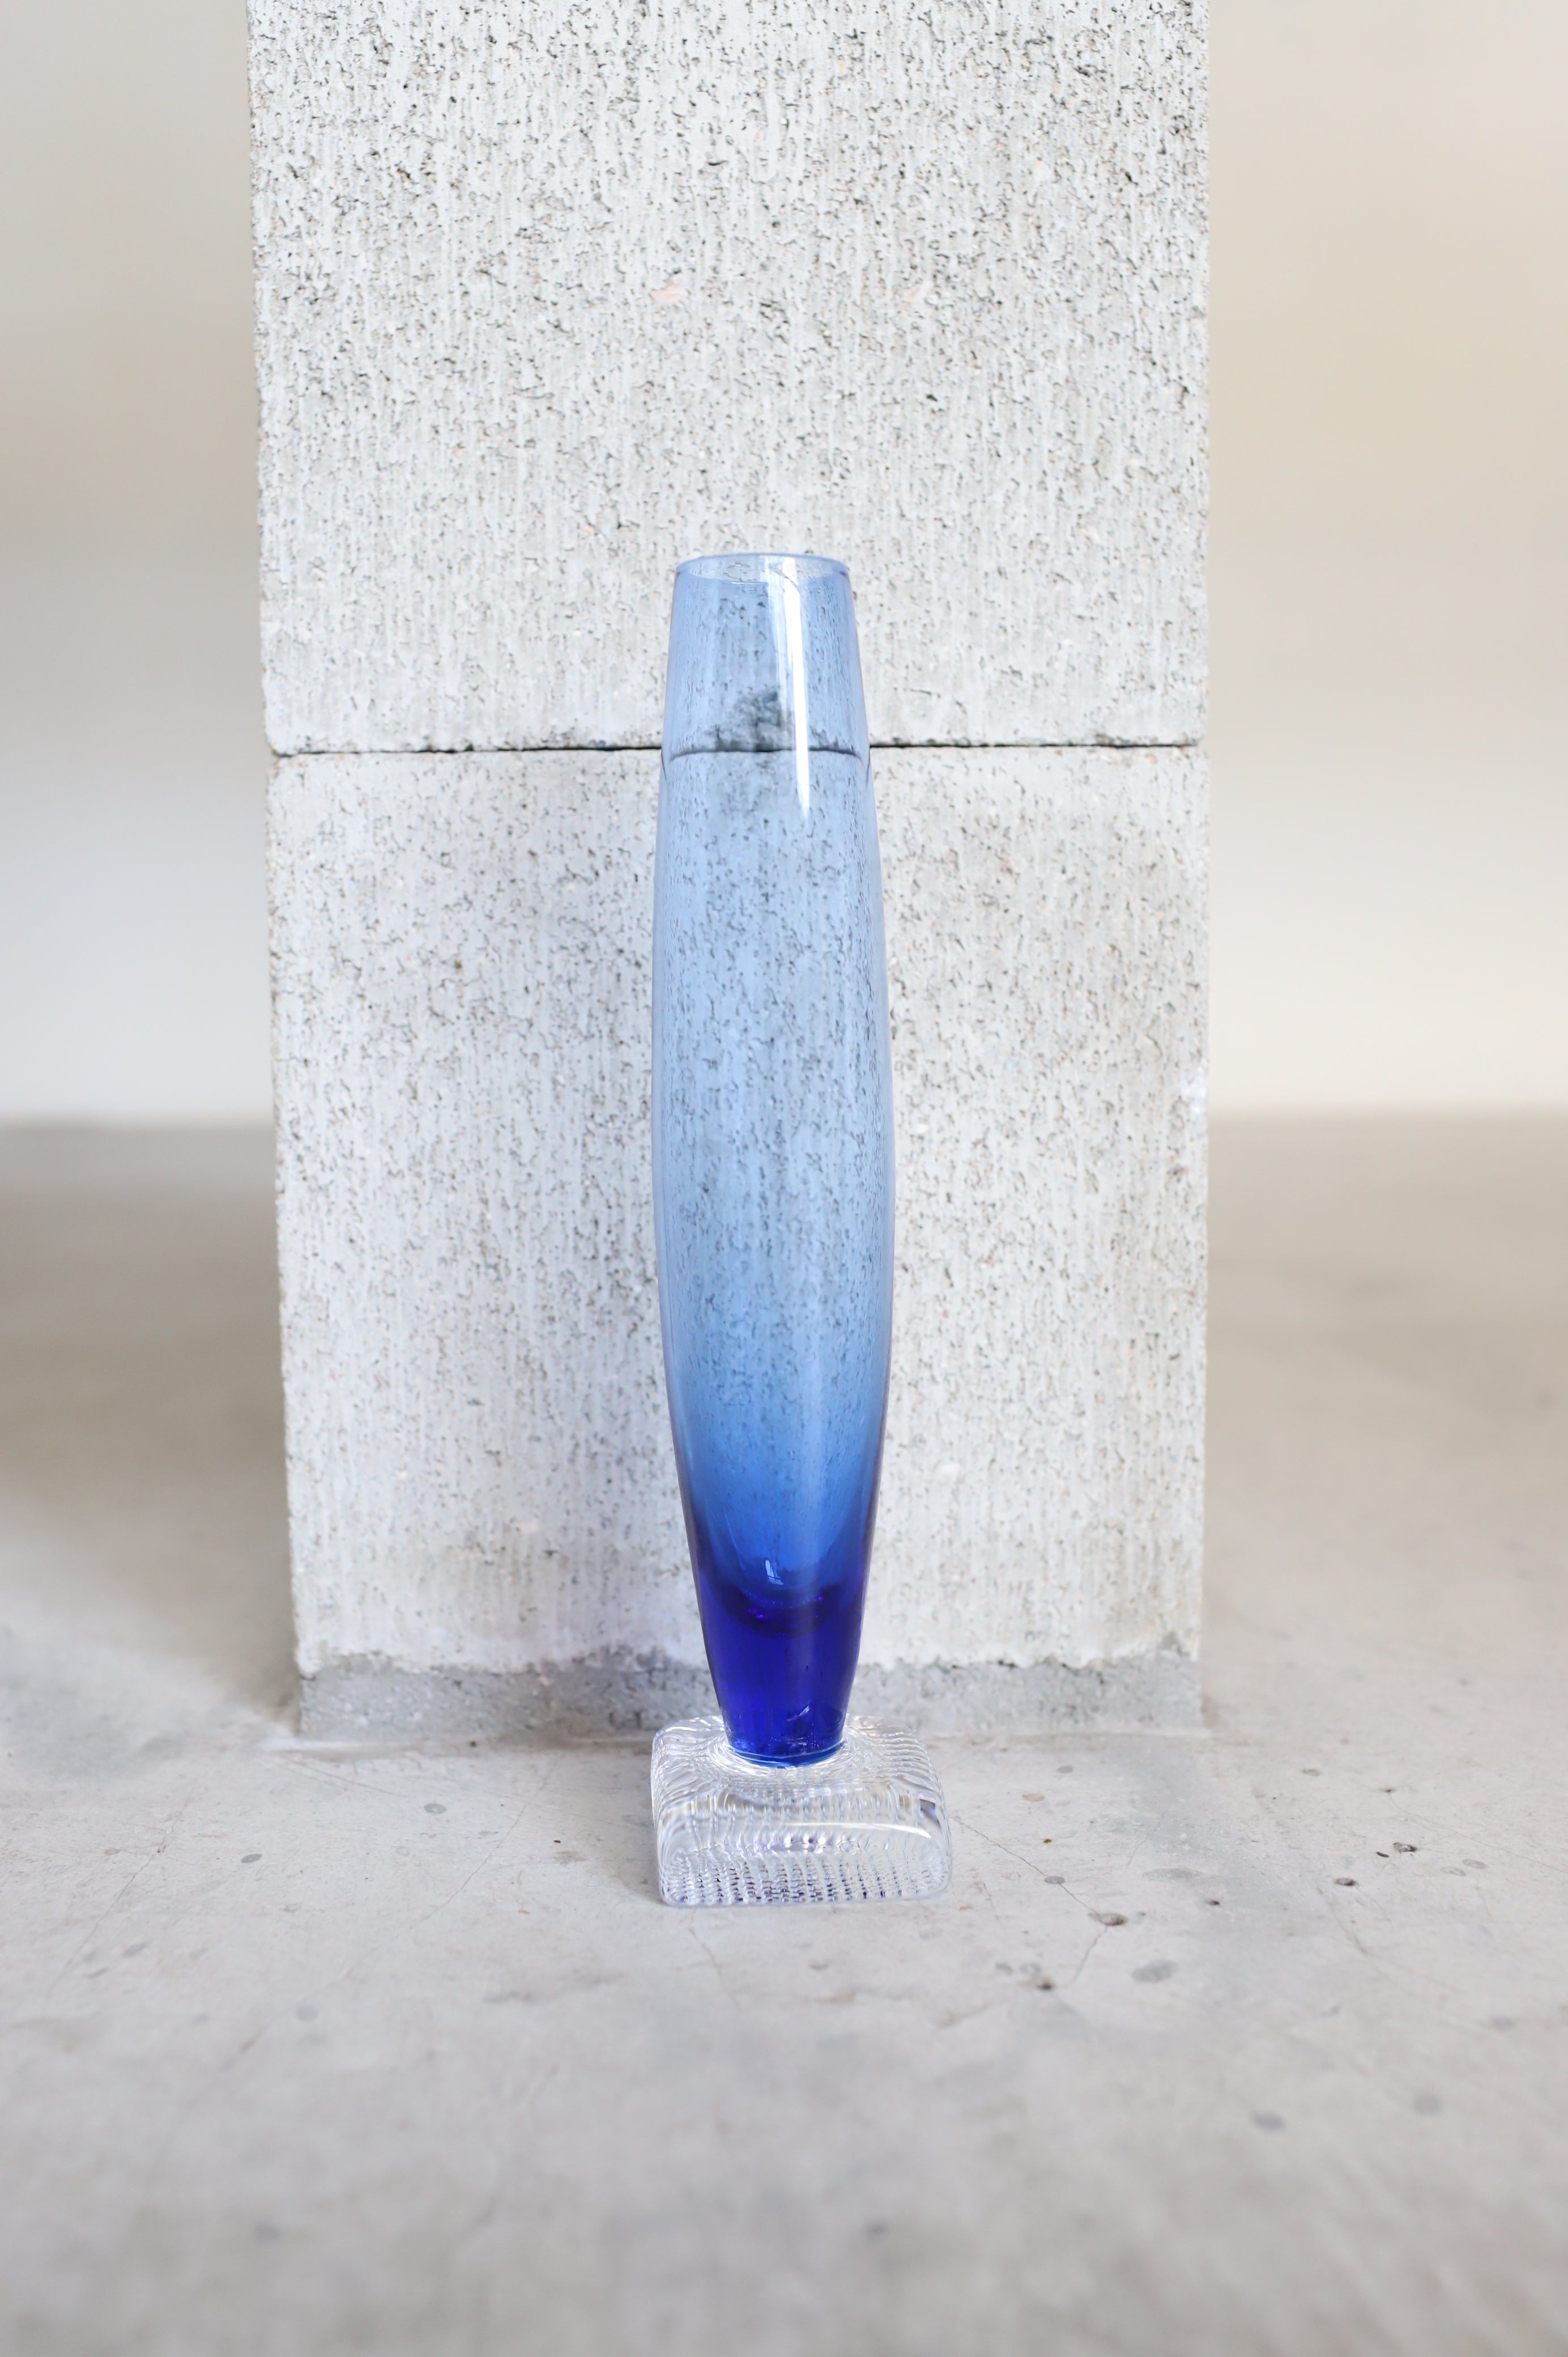 August Vase #21